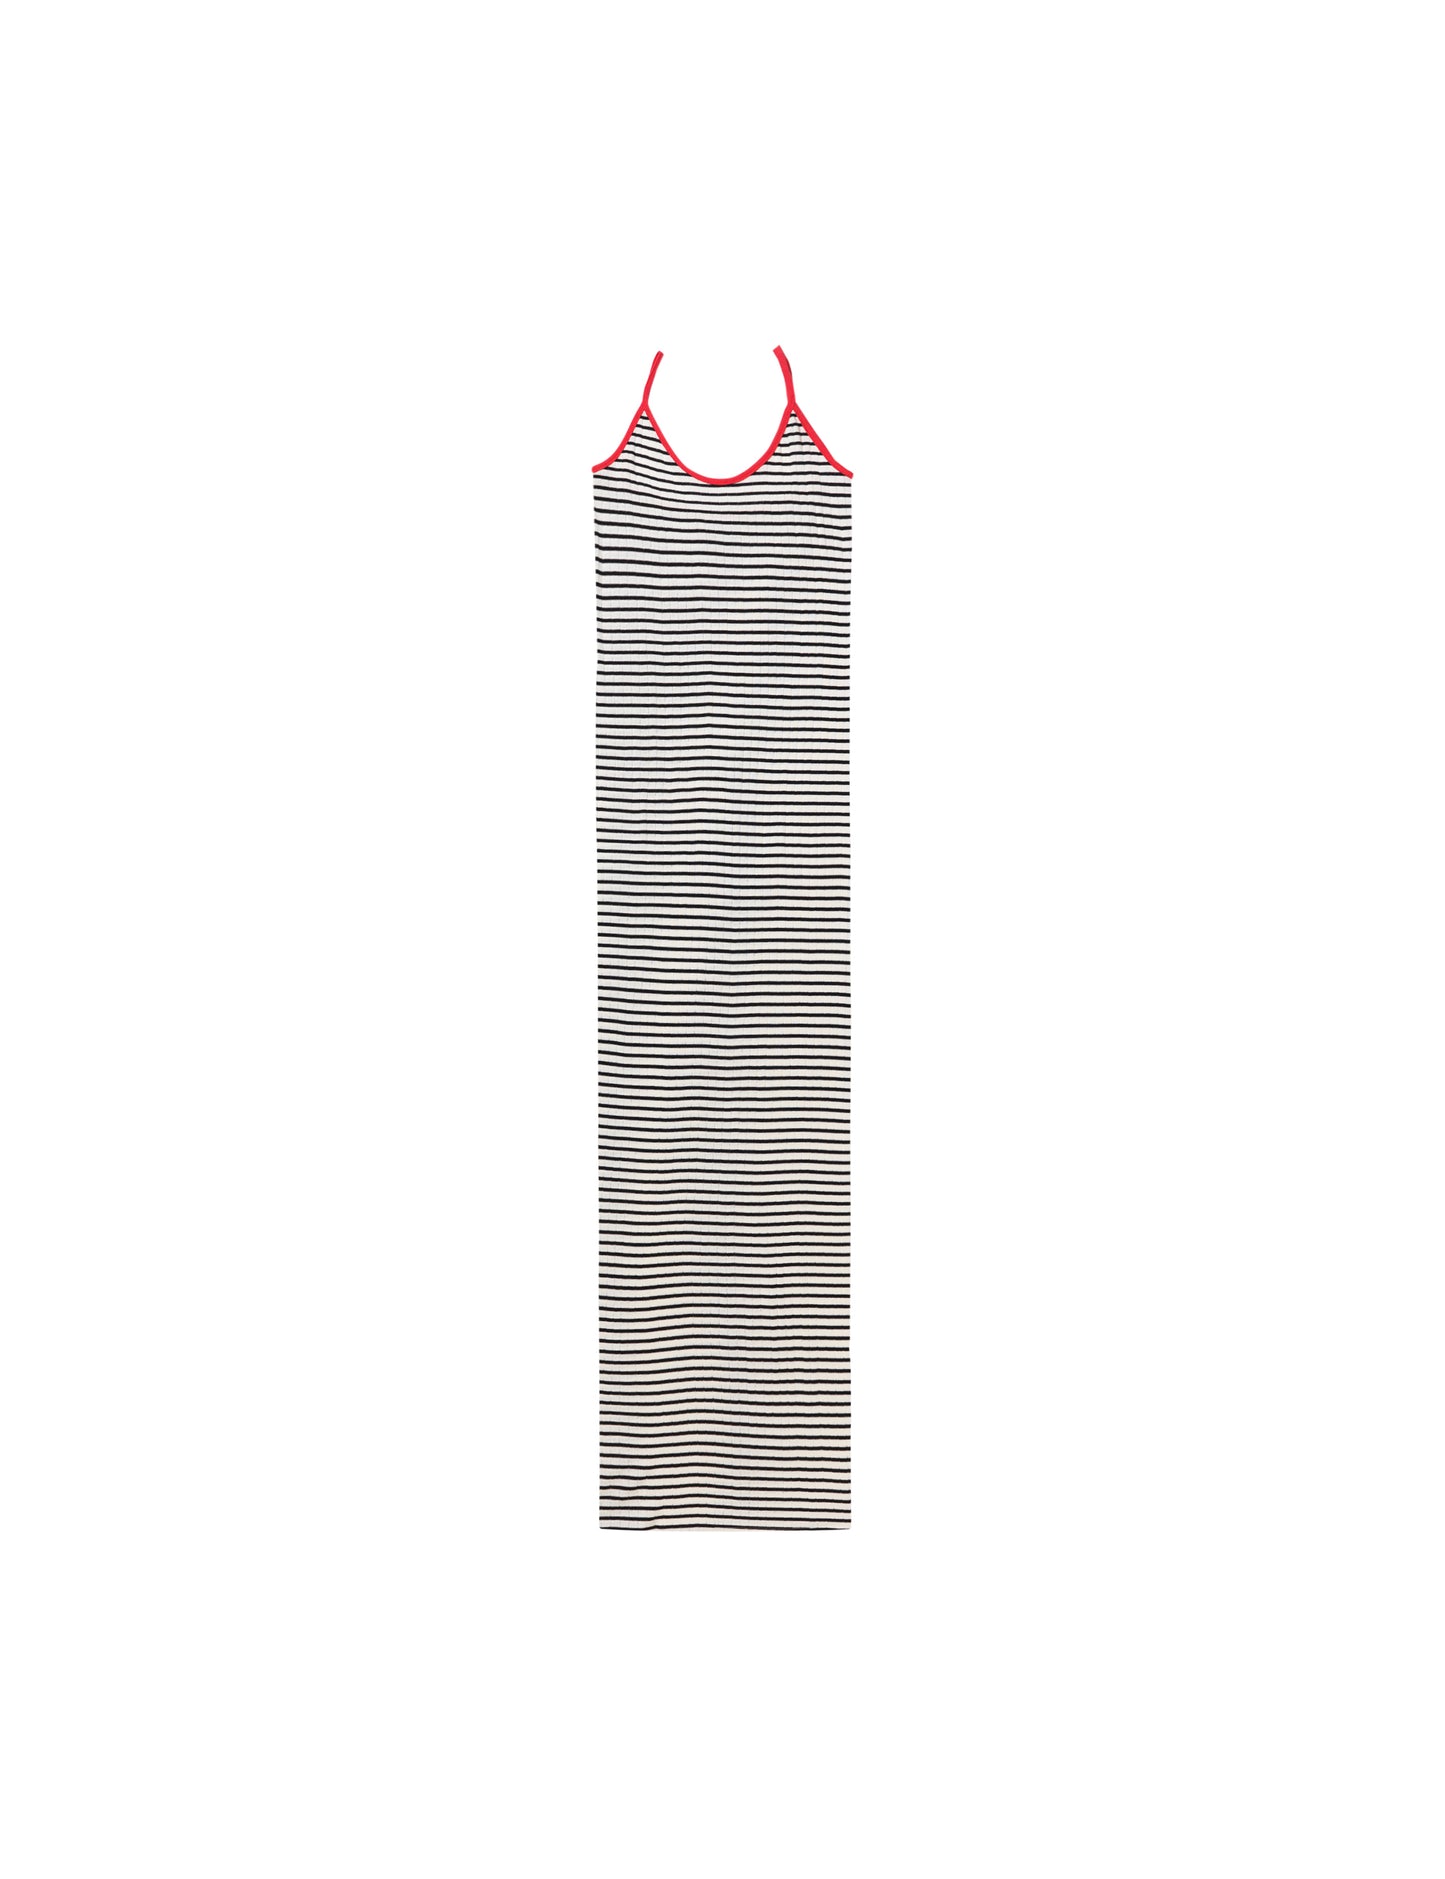 NPS Strap Dress NPS Stripe, NPS Ecru/Black/Red